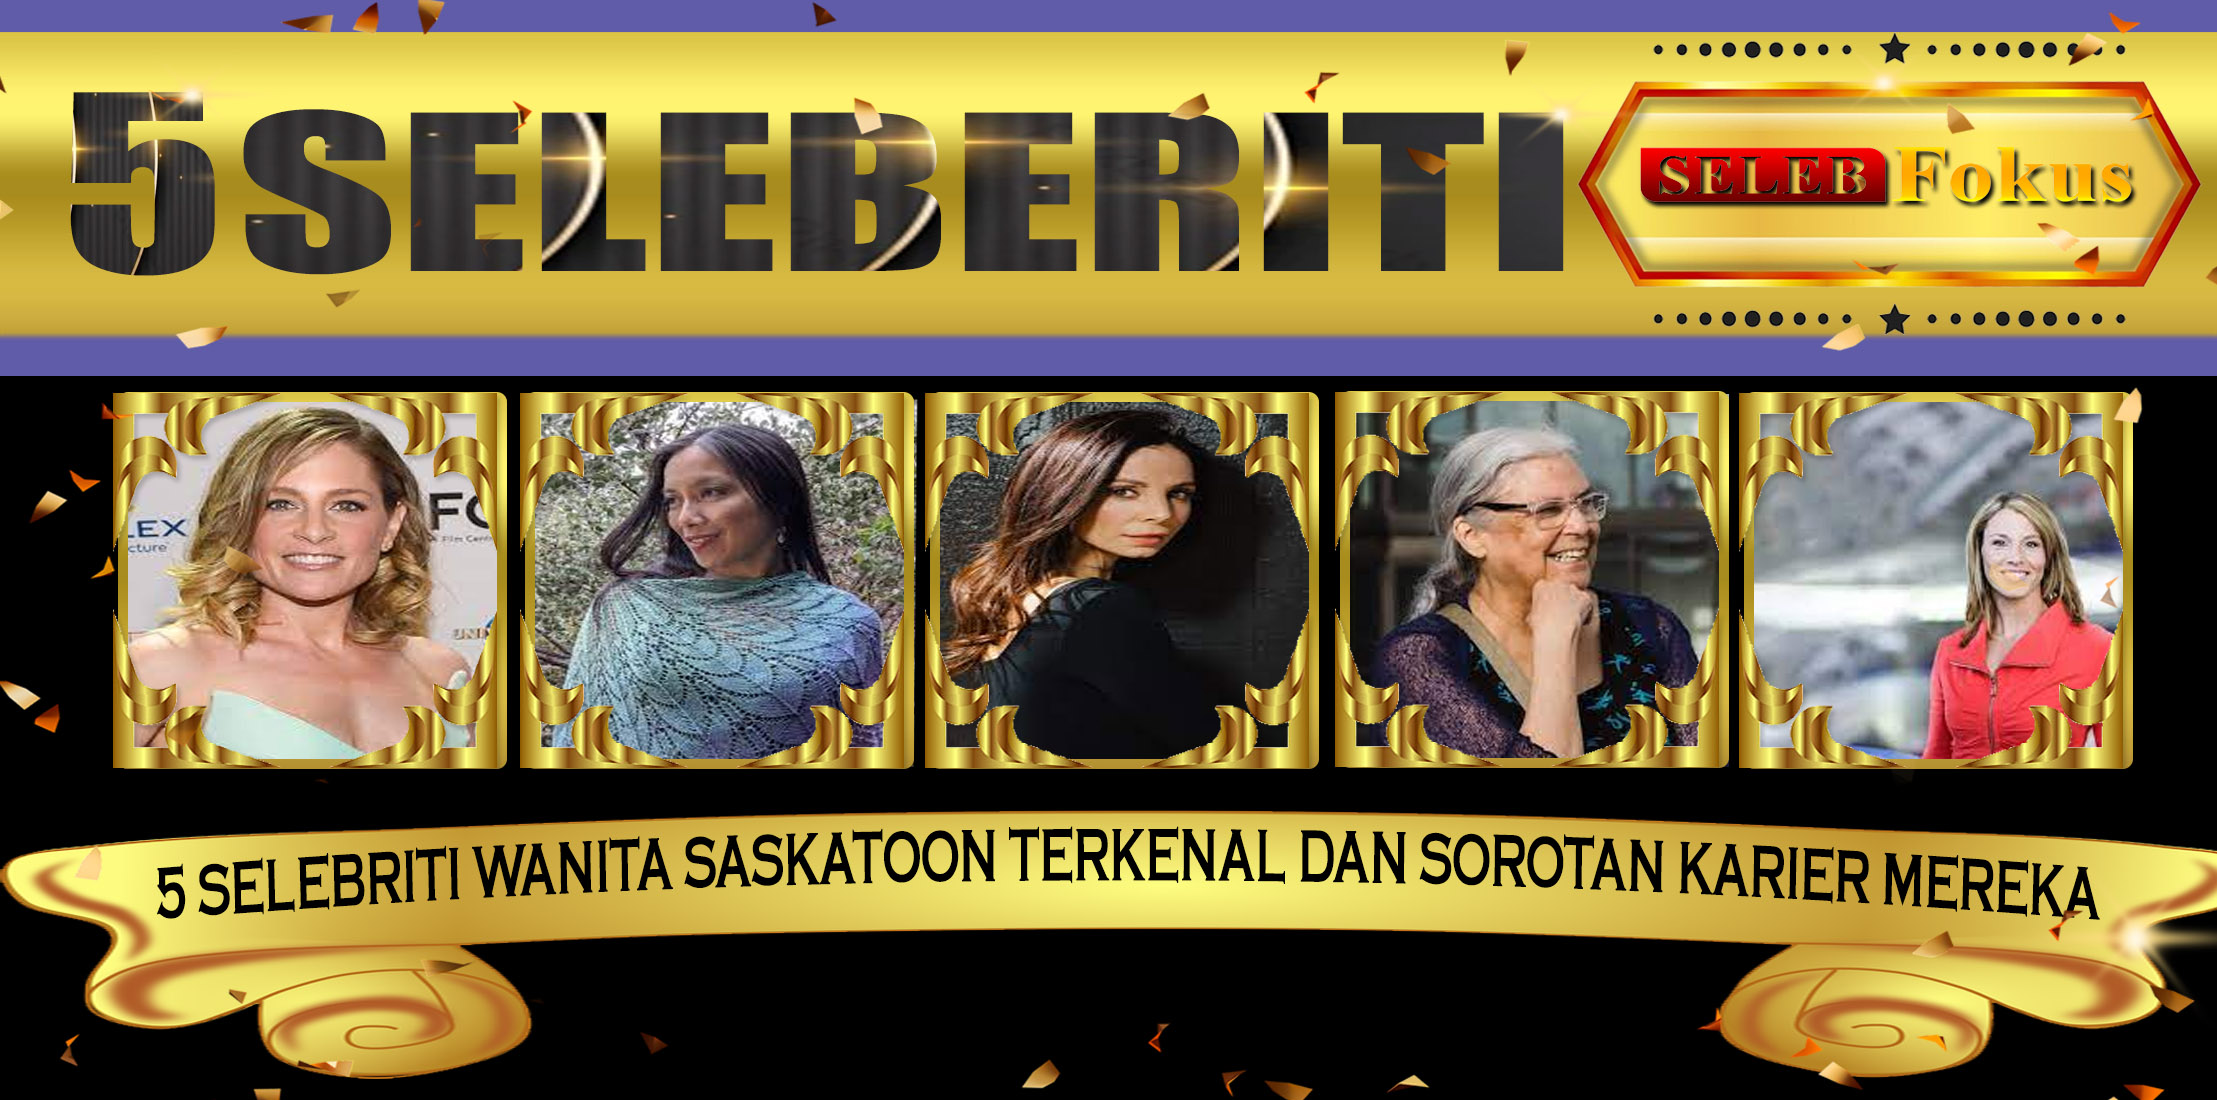 5 Selebriti Wanita Saskatoon Terkenal dan Sorotan Karier Mereka